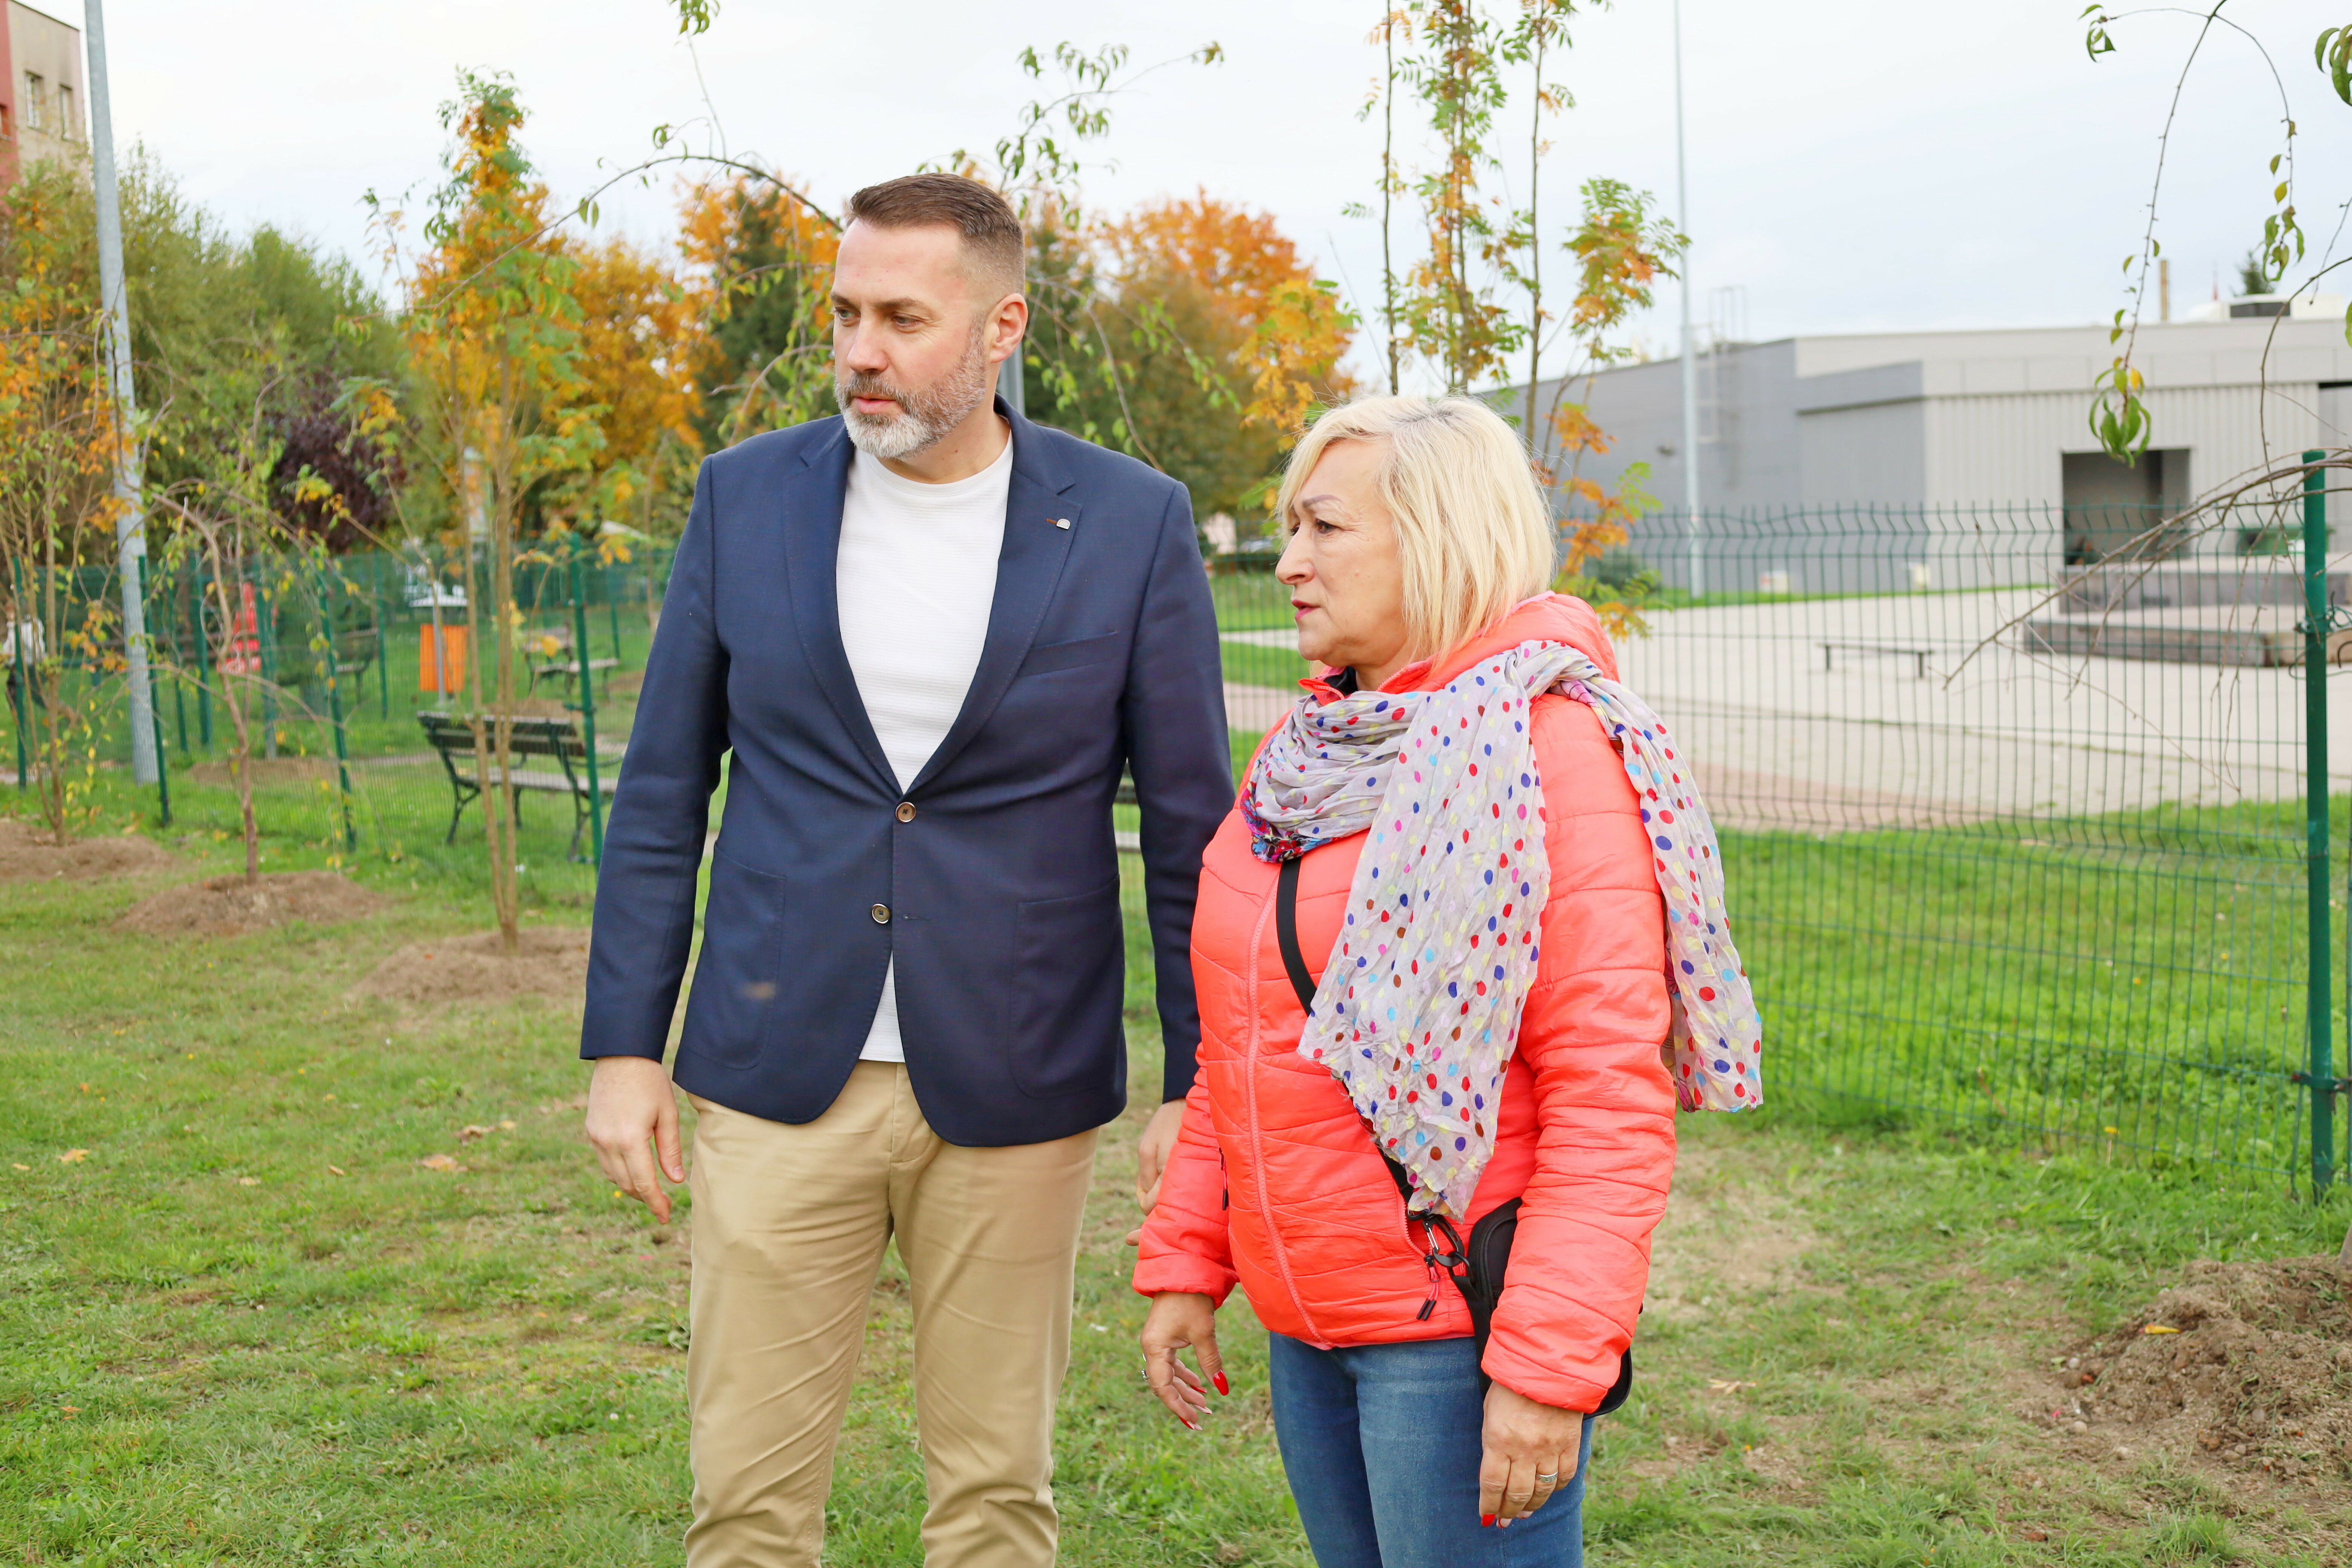 Zastępca Burmistrza Przemysław Sikora i radna Anna Żurek podczas oględzin terenu przy ul. Łokietka w Żarowie